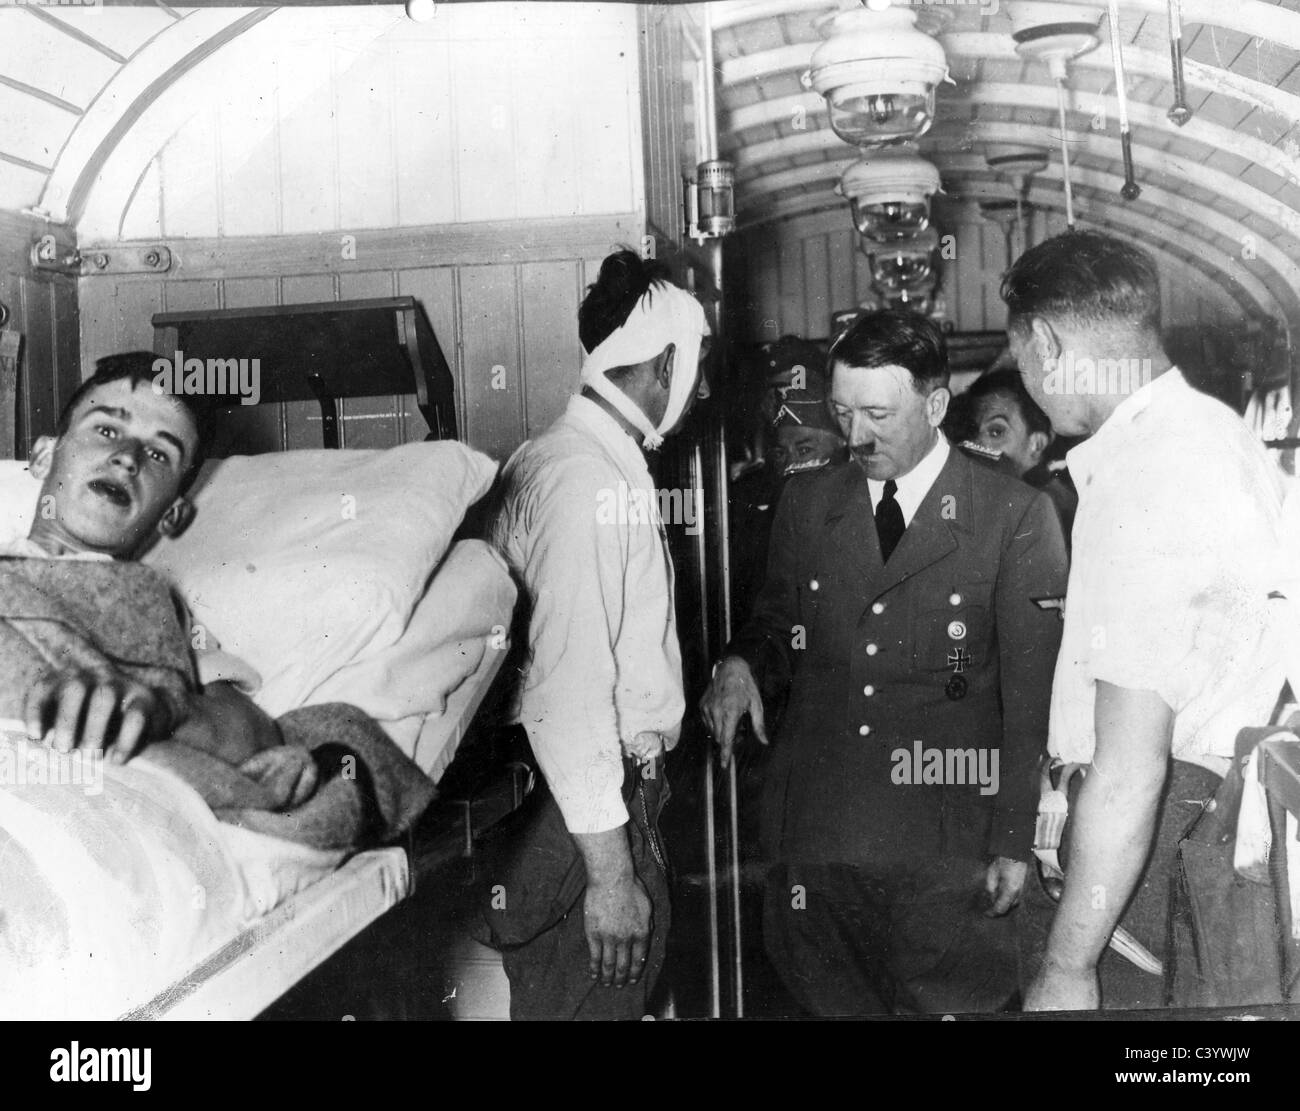 ADOLF HITLER besucht mobilen Lazarett in einem Eisenbahnwagon während der deutschen Invasion von Polen im September 1939 Stockfoto